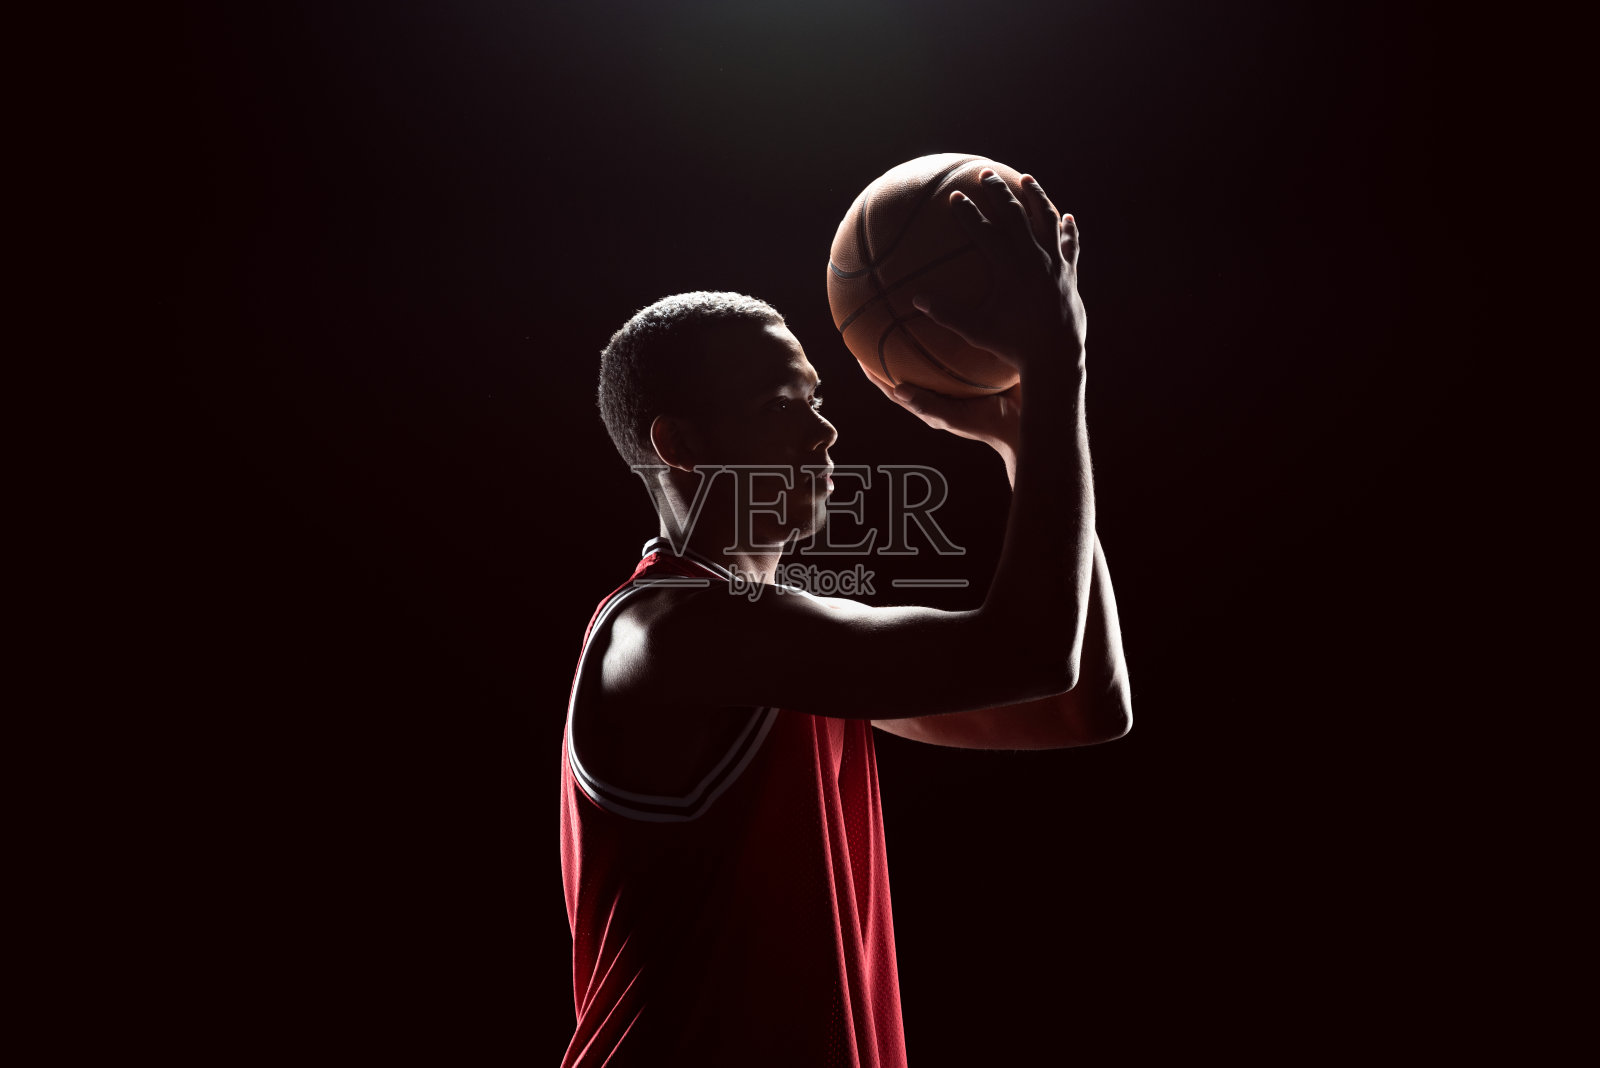 非洲裔美国篮球运动员向黑人投掷球照片摄影图片